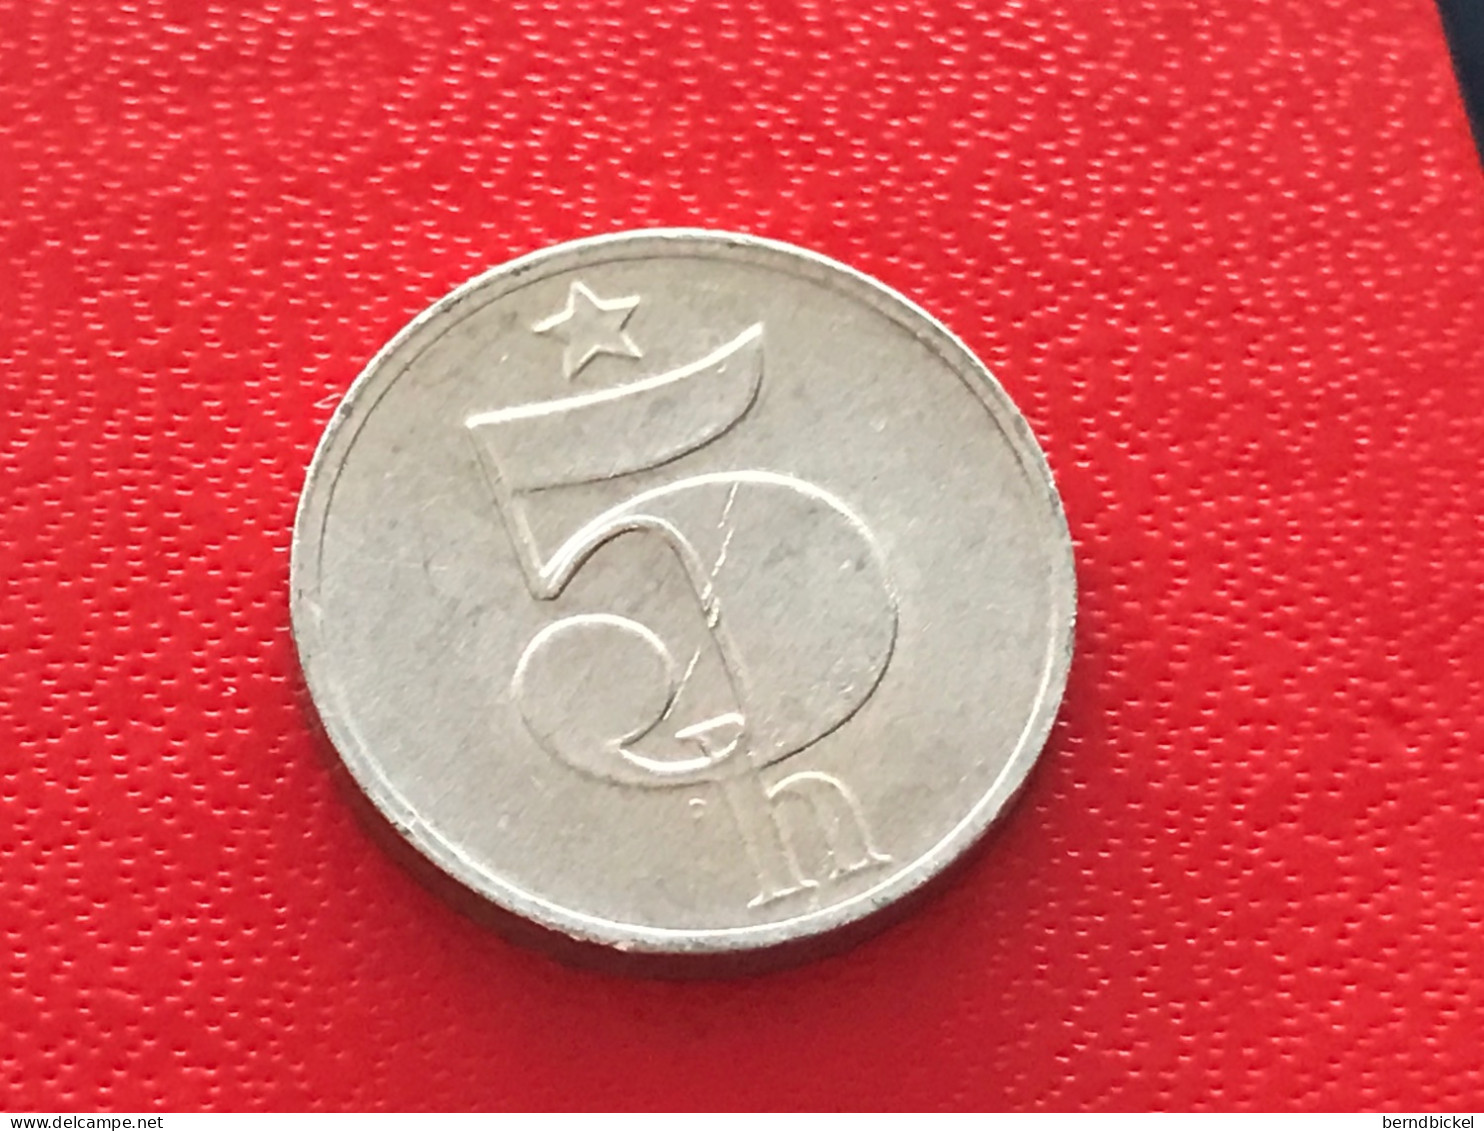 Münze Münzen Umlaufmünze Tschechoslowakei 5 Heller 1977 - Checoslovaquia